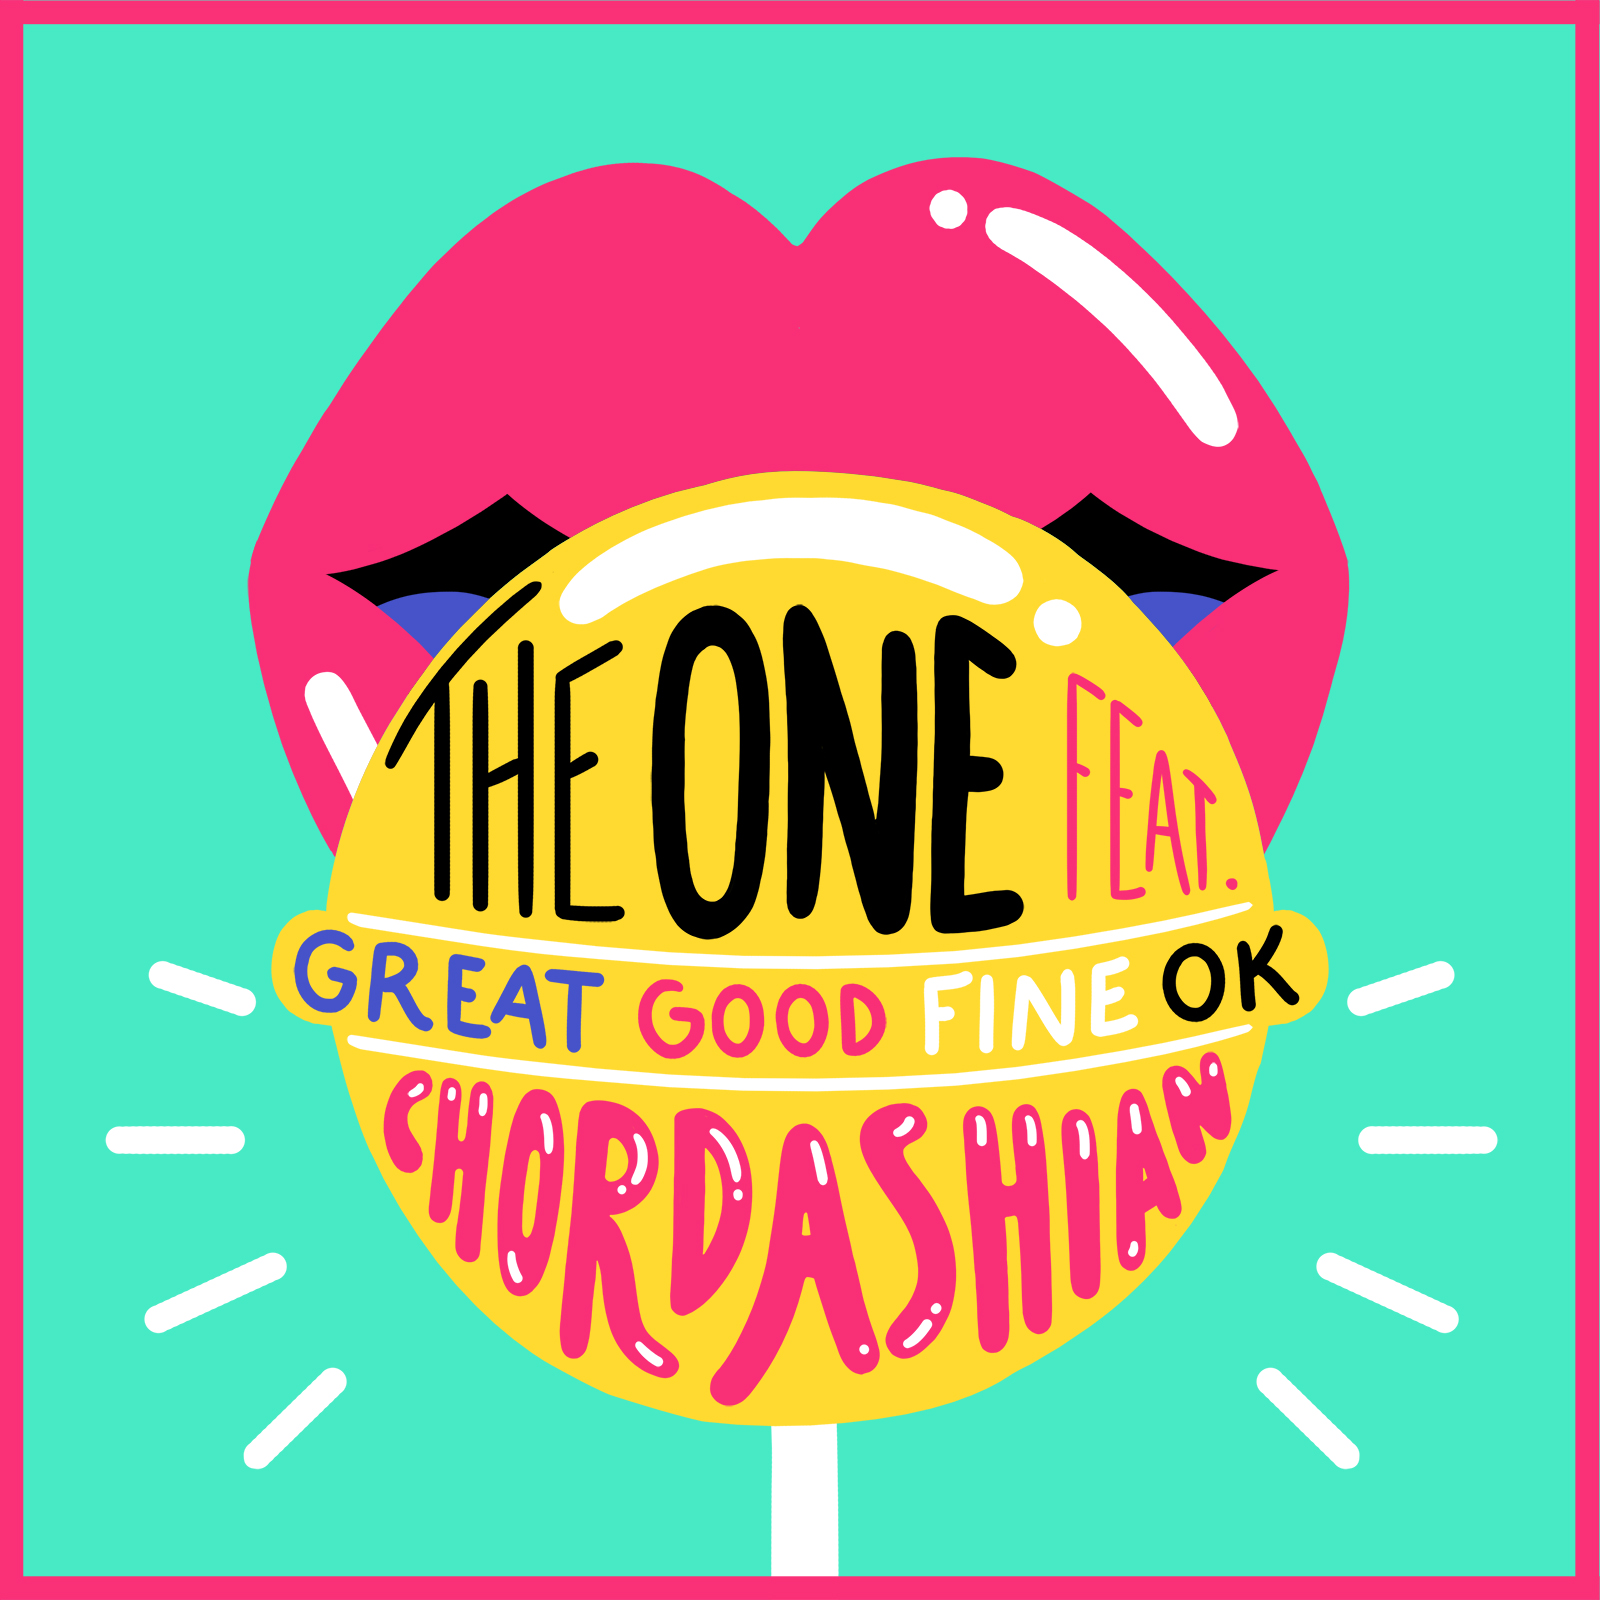 Chordashian - The One feat. Great Good Fine OK